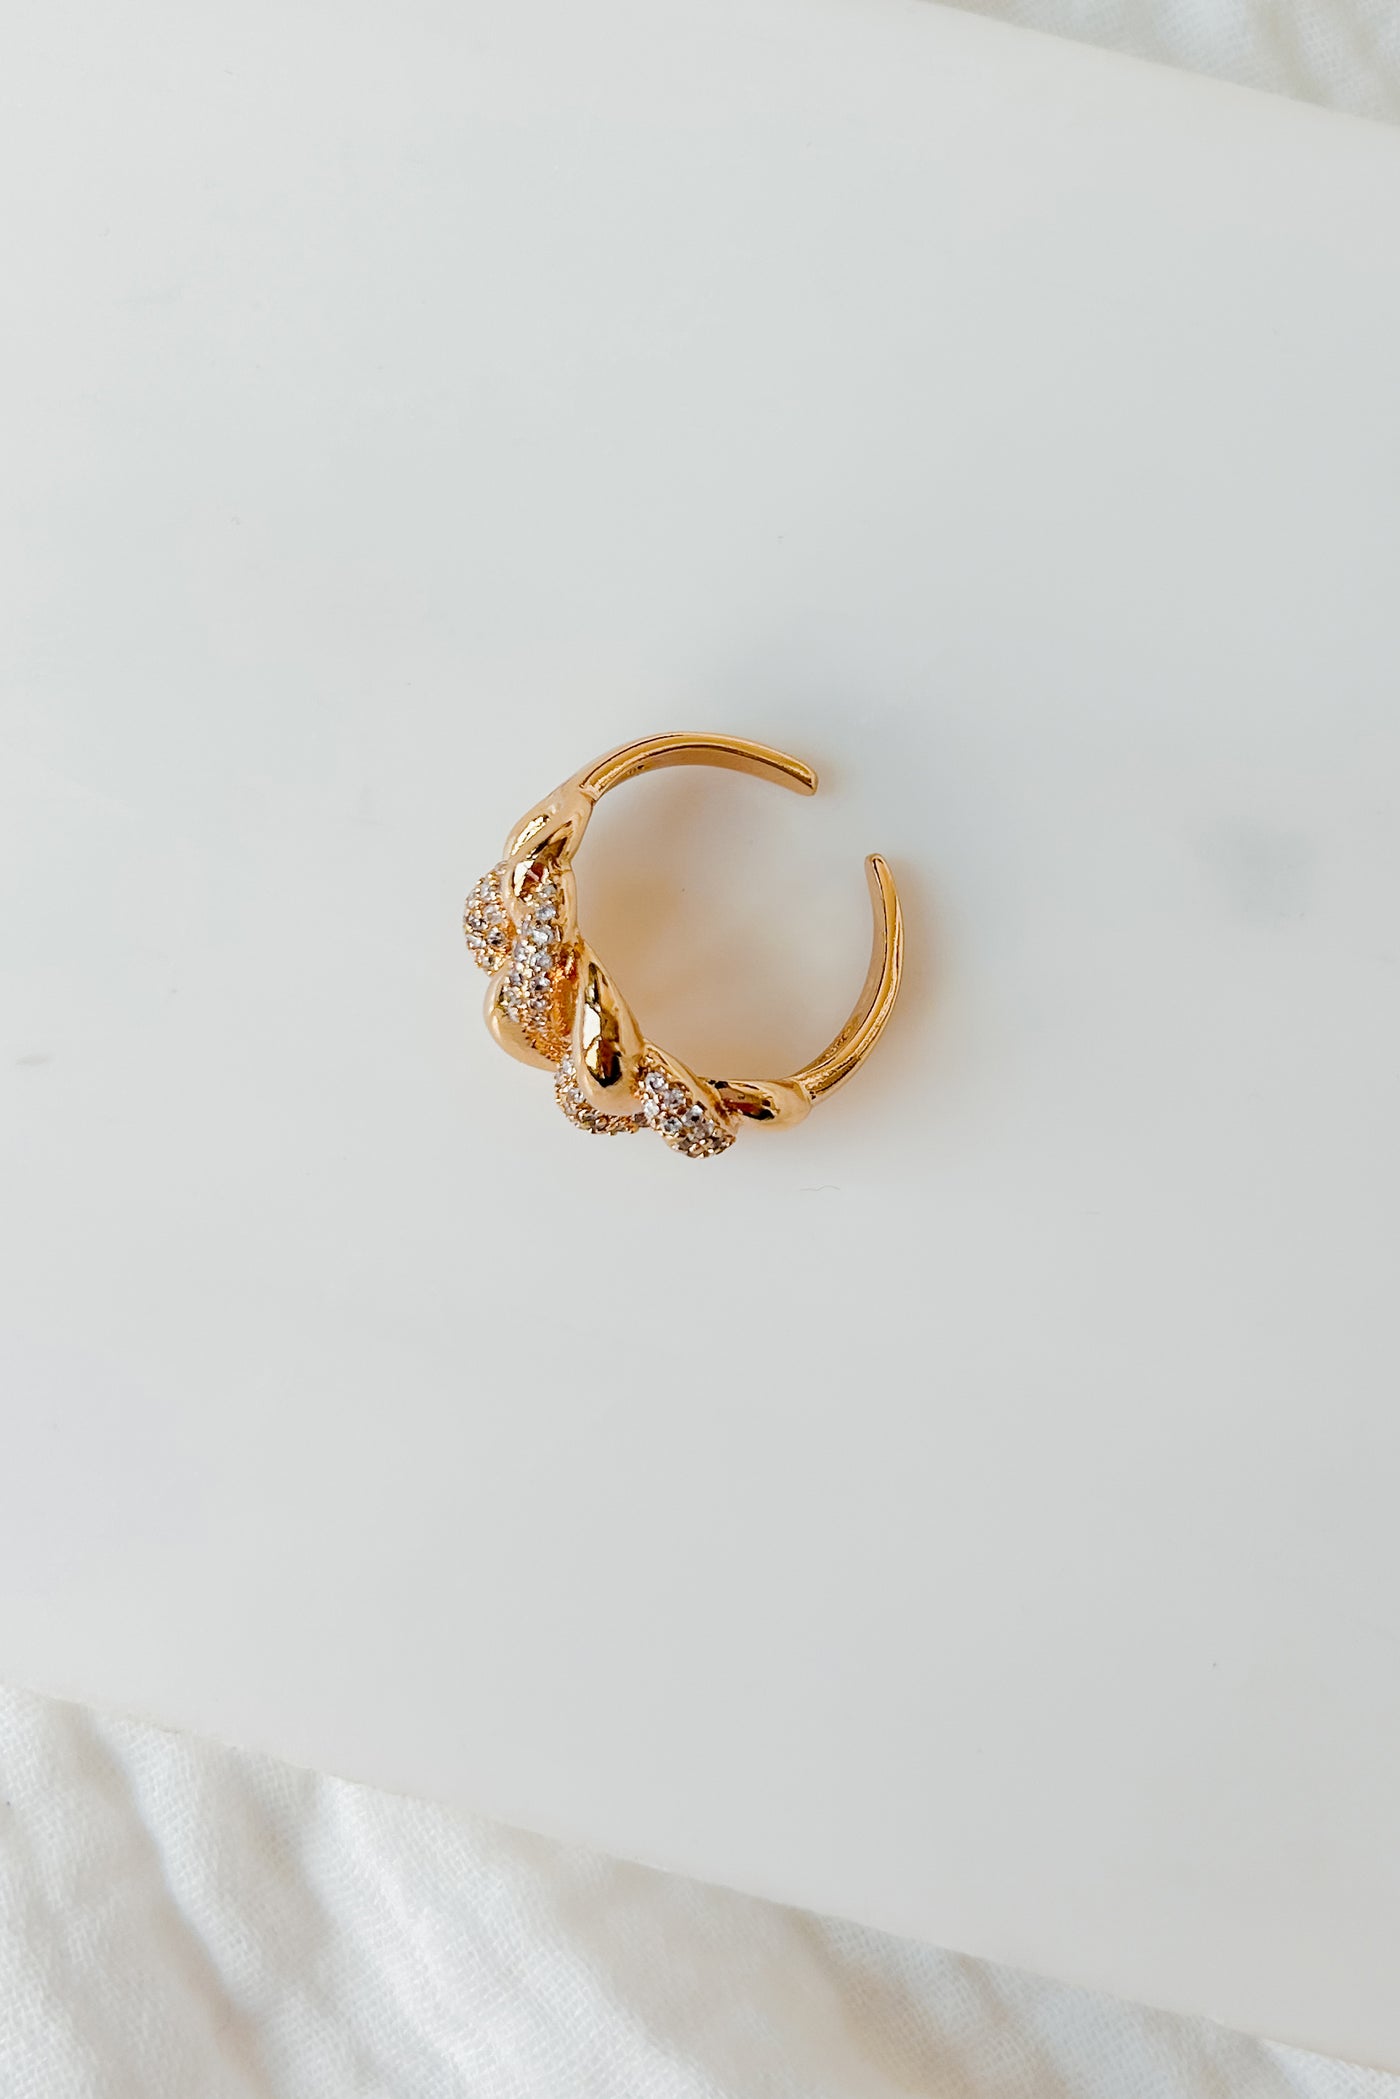 Habitual Spender Crystal Chain Ring (Gold) - NanaMacs